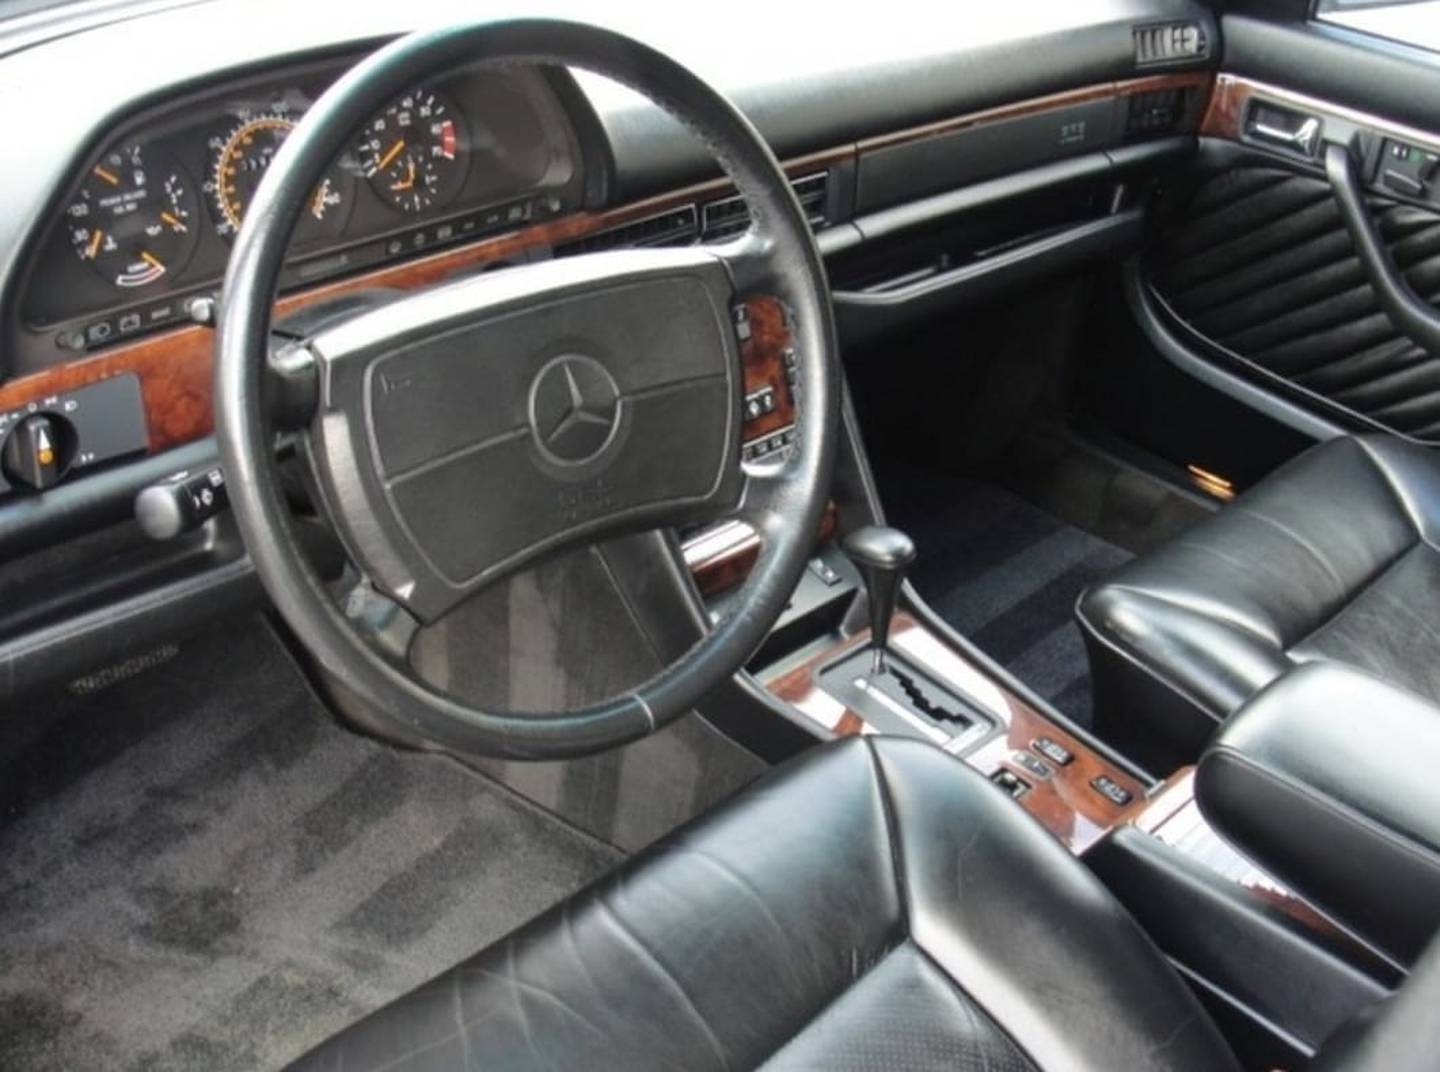 Mercedes Benz del año 85, propiedad de Alejandro Betancourt. Cortesía.